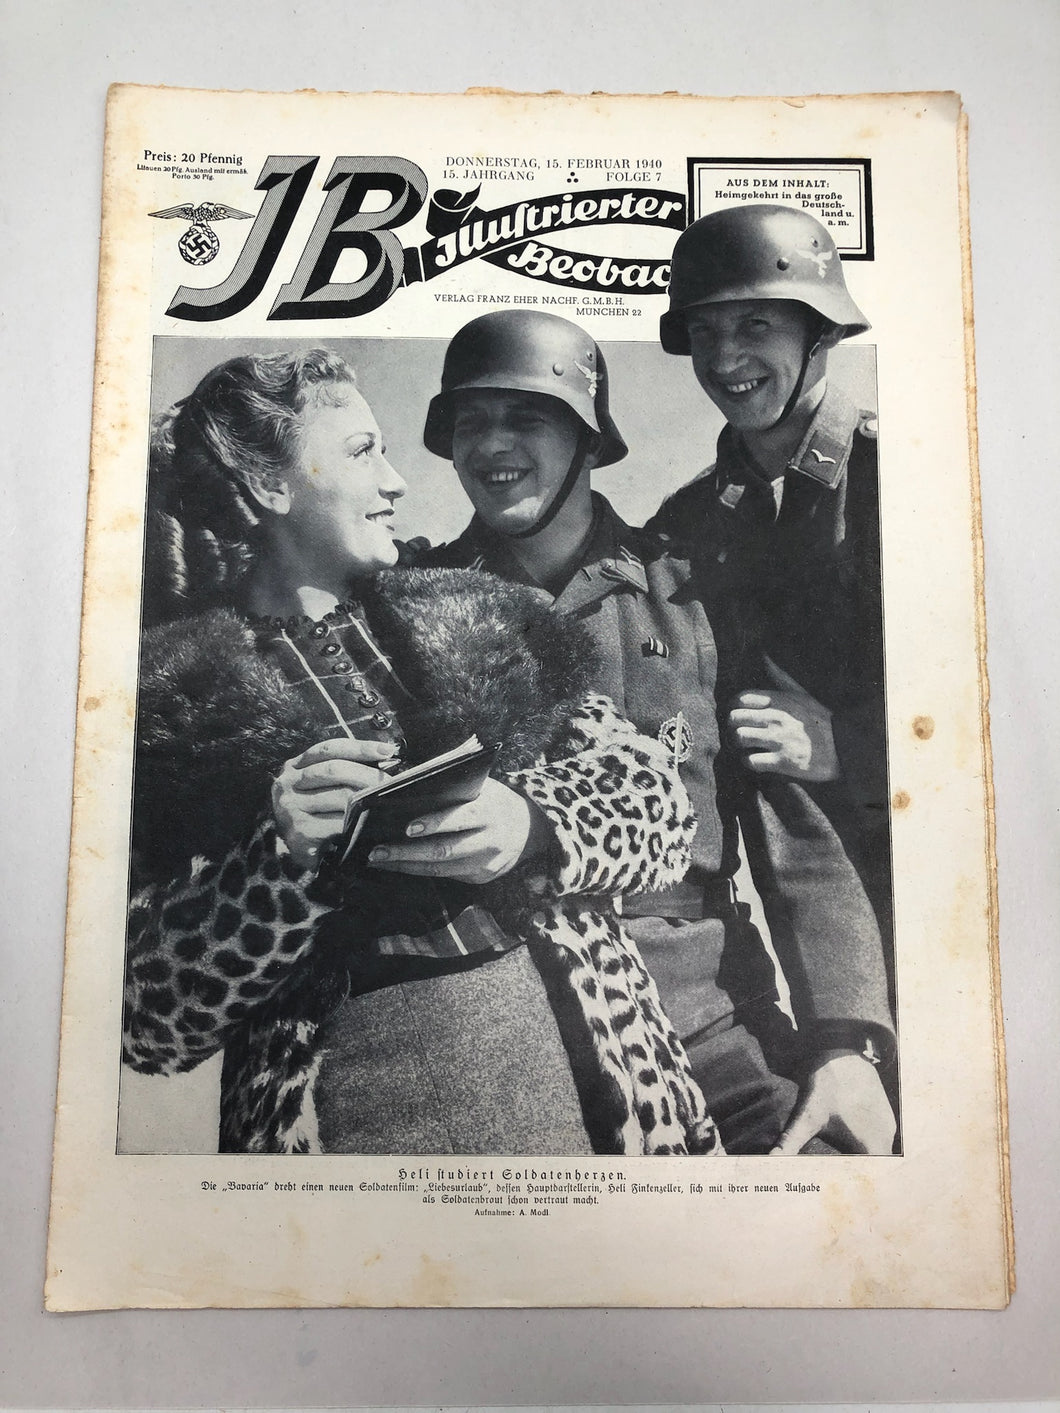 JB Juustrierter Beobachter NSDAP Magazine Original WW2 German - 15 February 1940